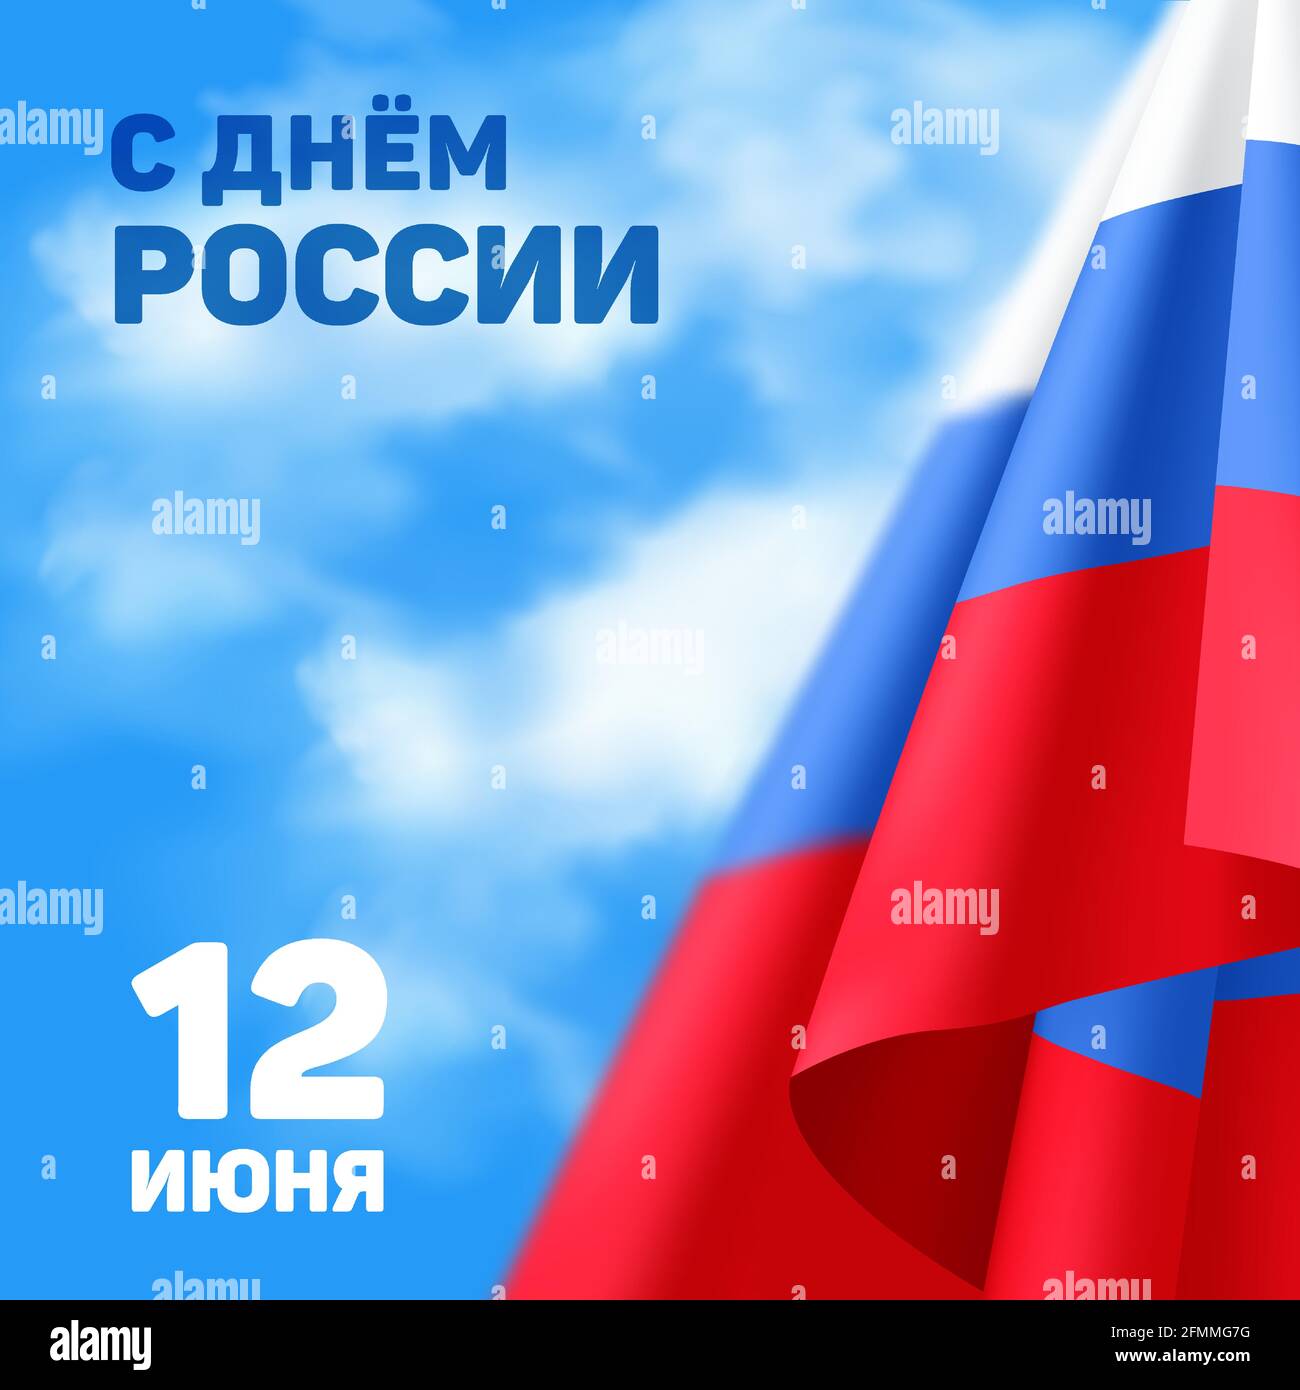 Russland Nationalfeiertag Banner oder Grußkarte mit der Inschrift auf Russisch: '12 Juni. Russland-Tag“. Vektor-Illustration mit tricolor winkende Flagge zu t Stock Vektor